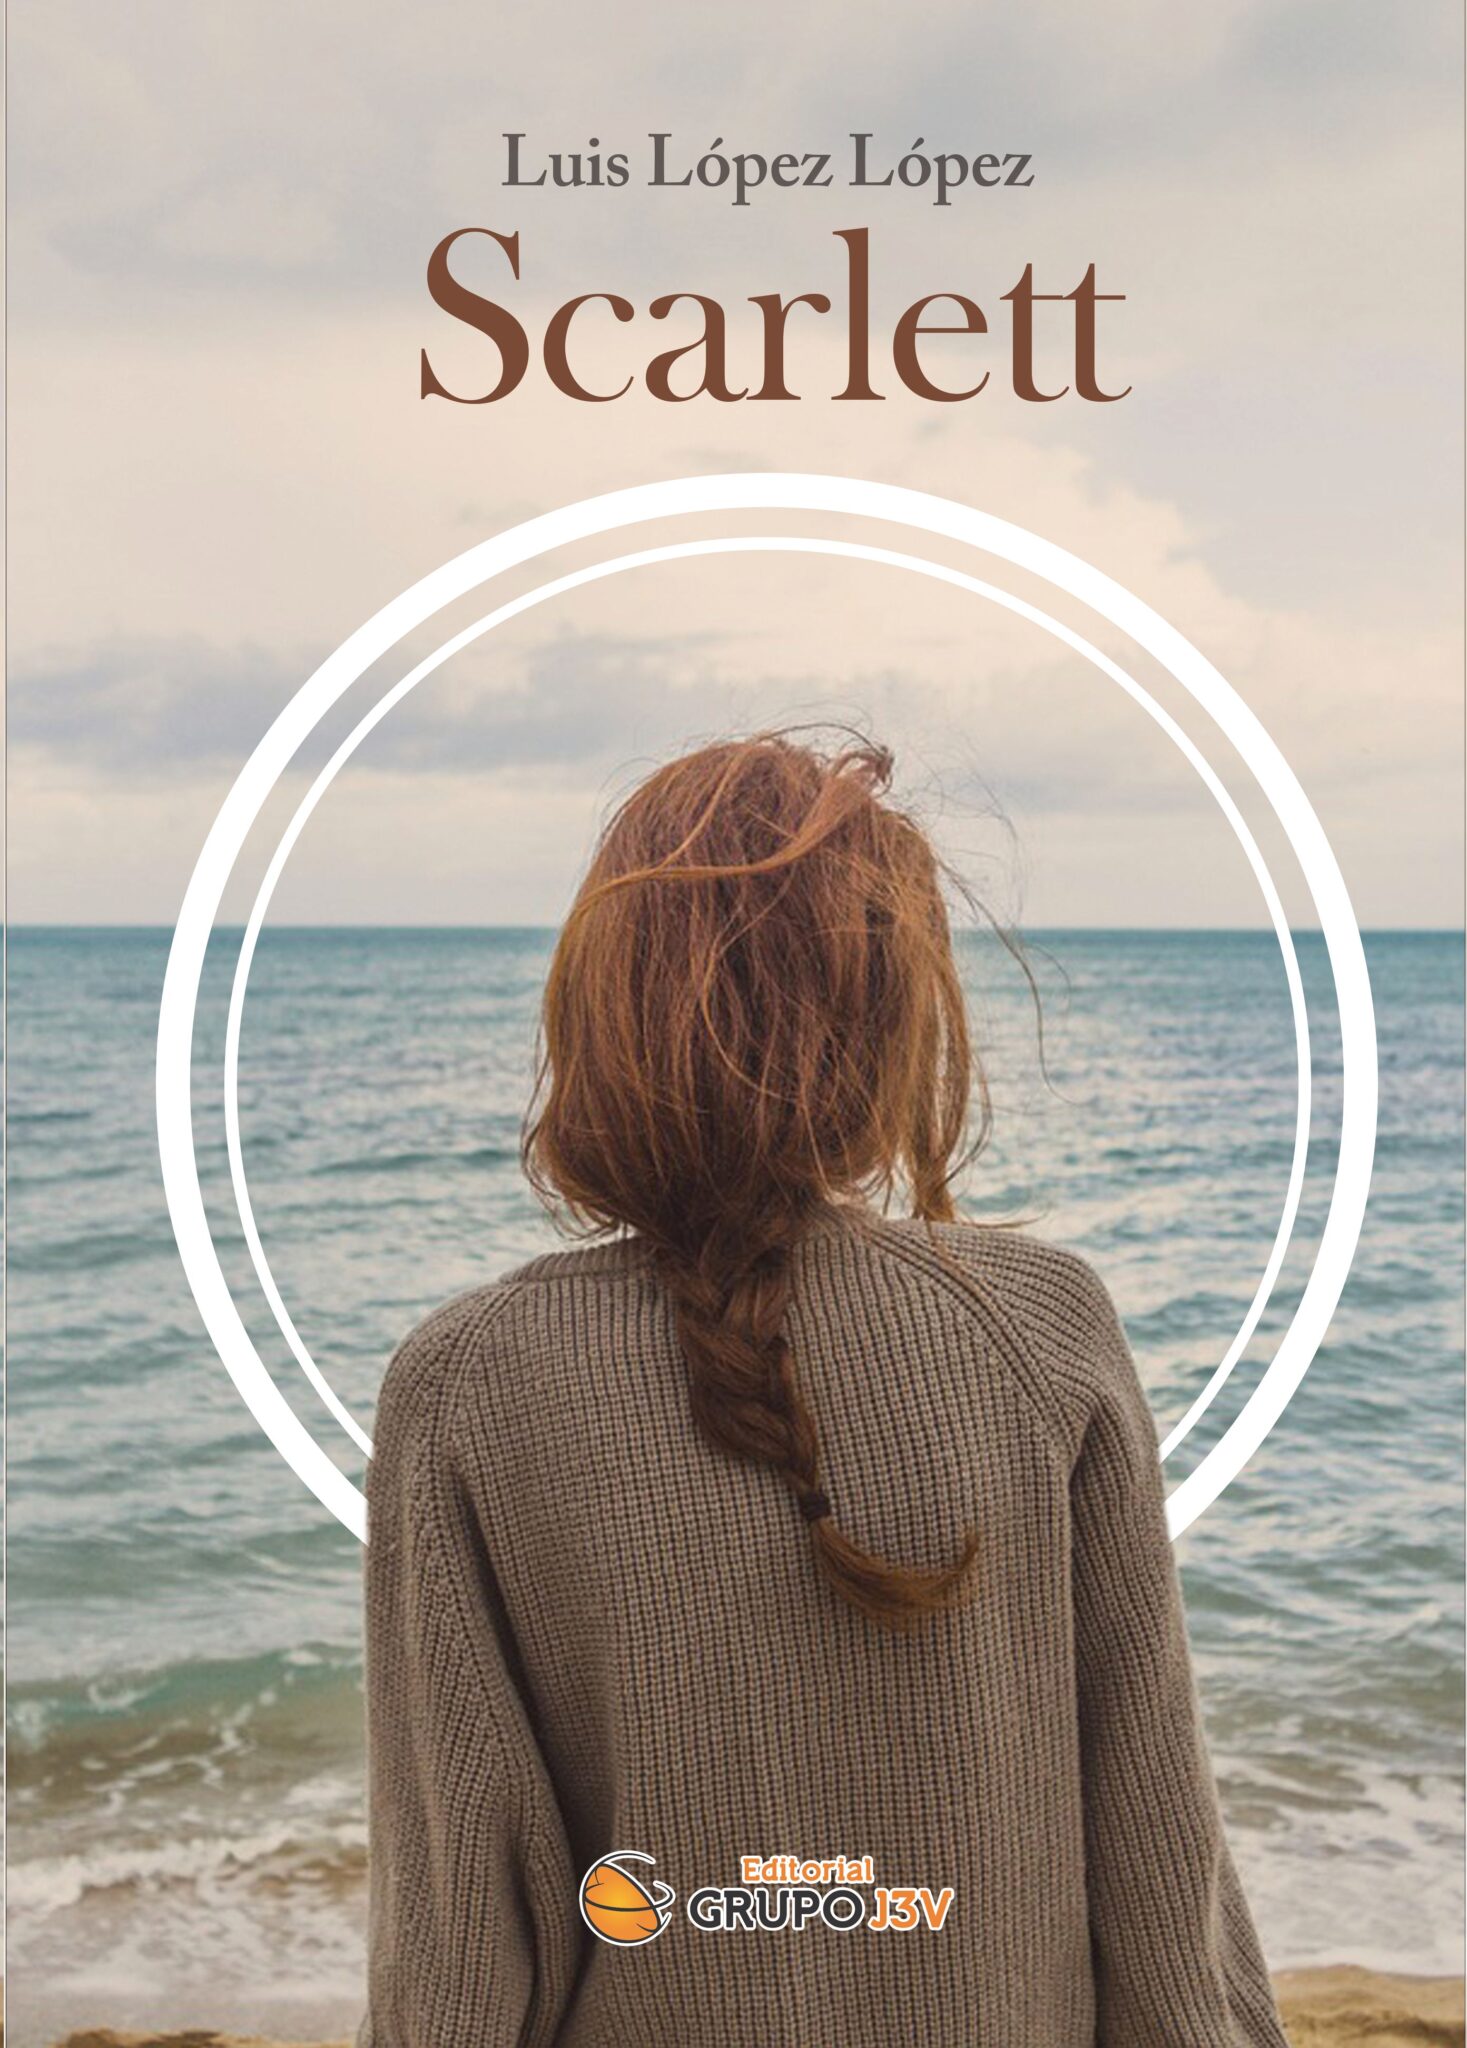 Luis López López presenta su libro ‘Scarlett’ el viernes 28 de junio